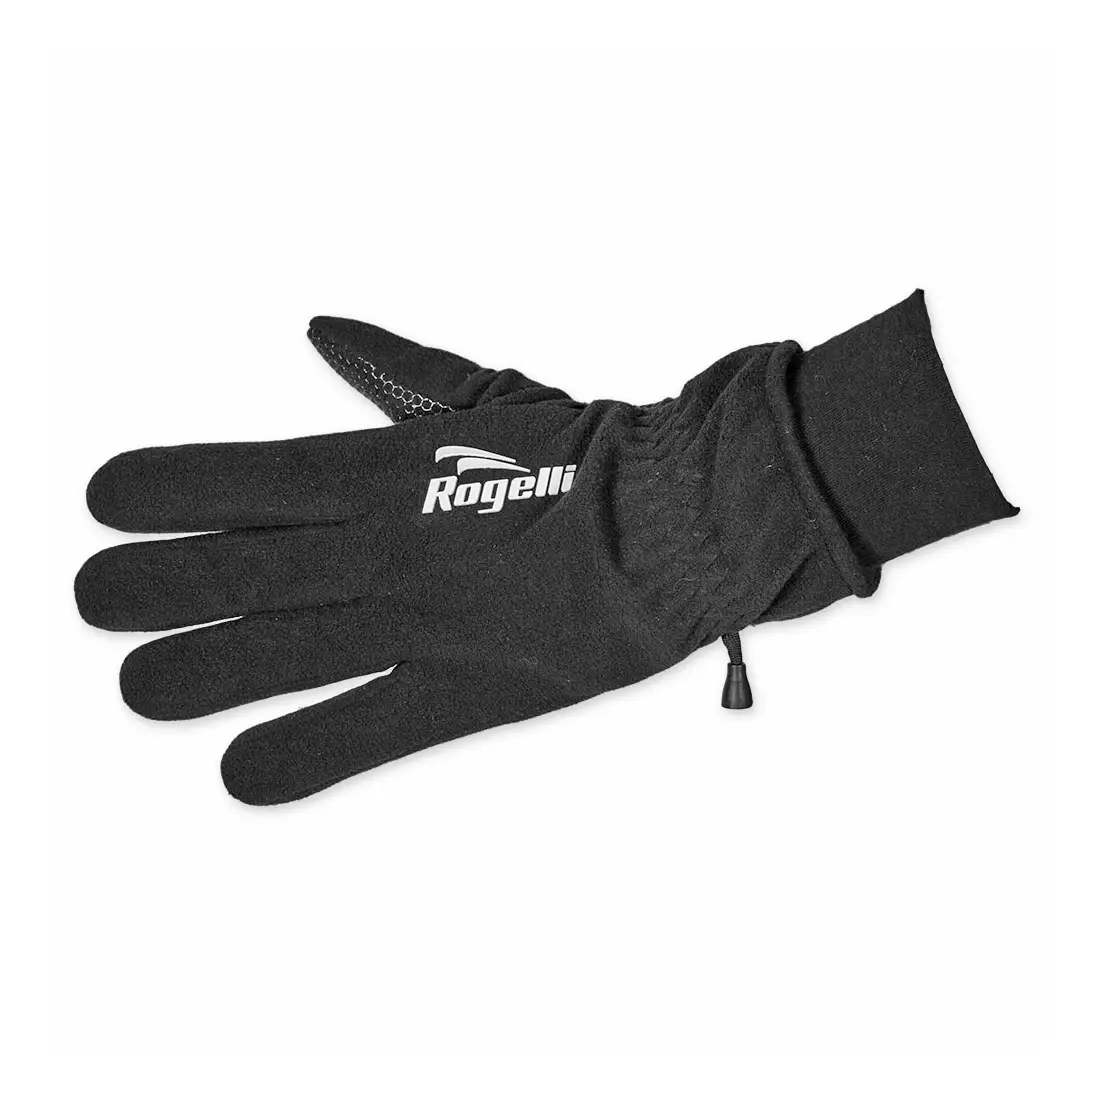 ROGELLI MILTON zimné rukavice, čierne 006.107